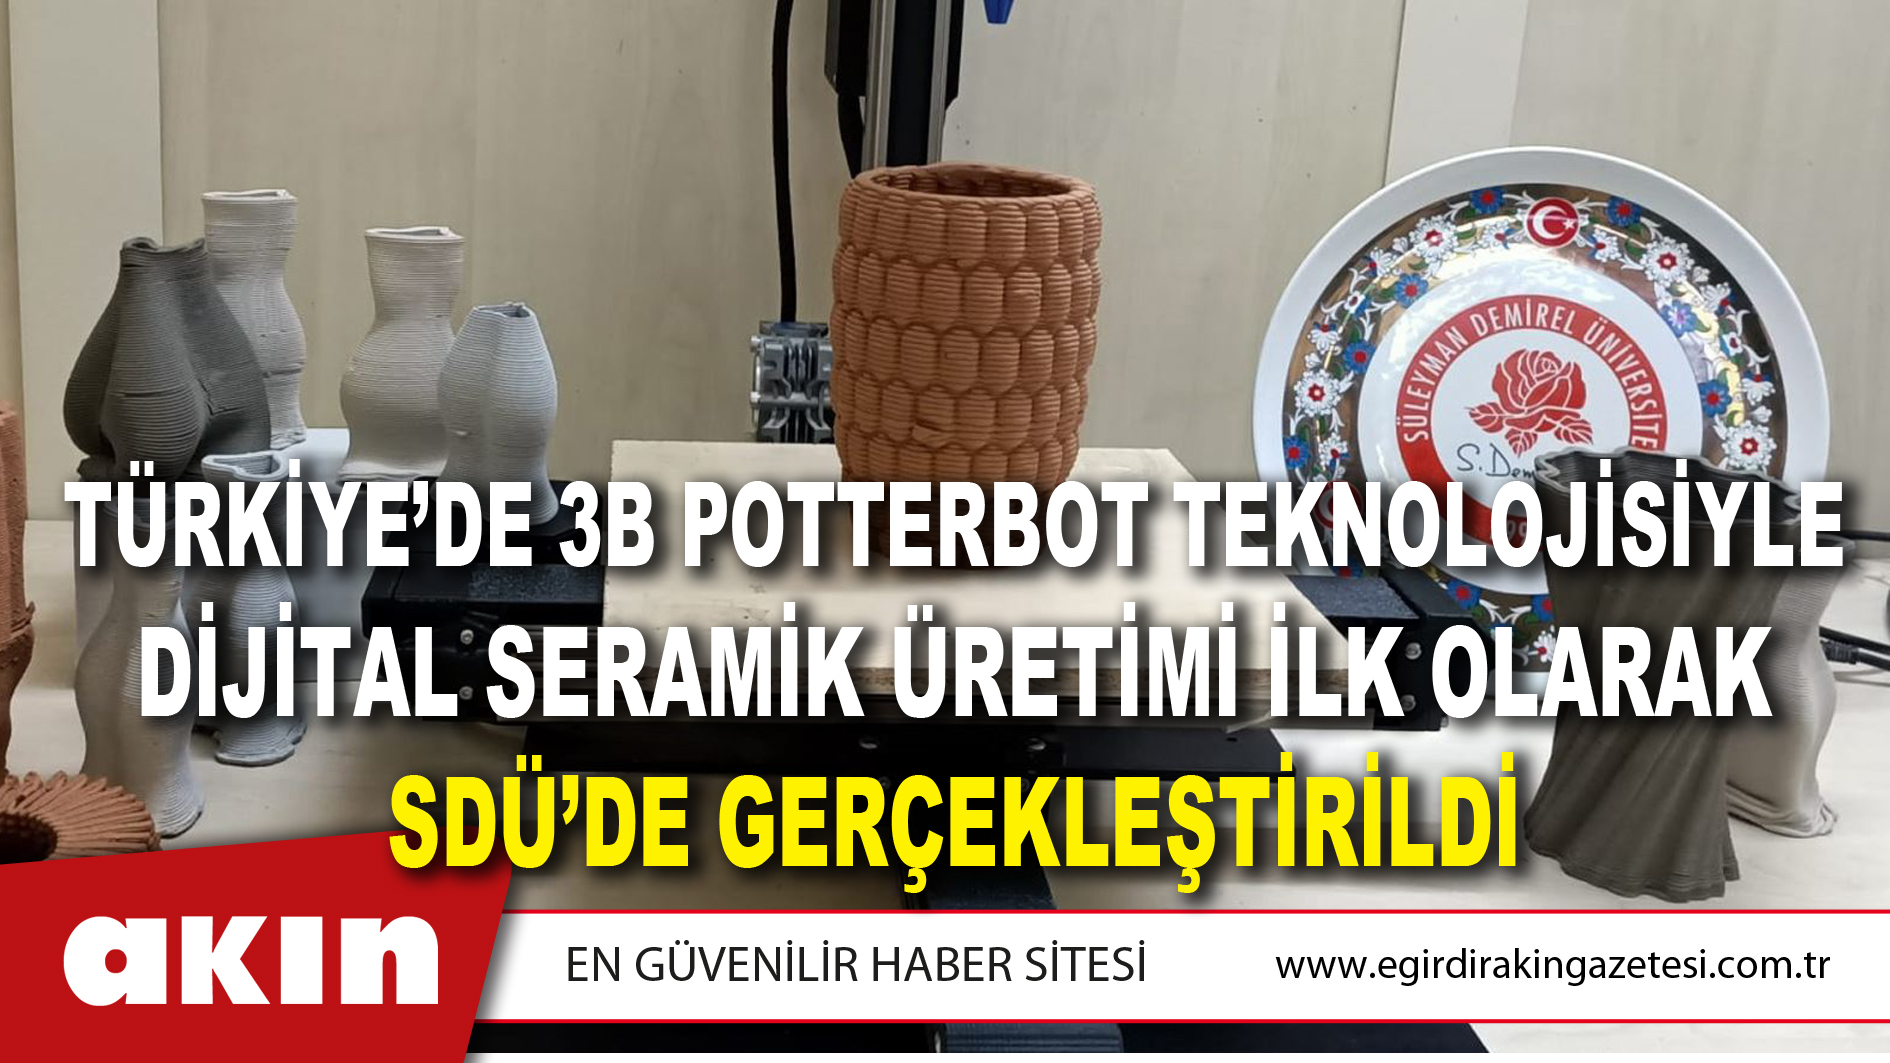 Türkiye’de 3b Potterbot Teknolojisiyle Dijital Seramik Üretimi İlk Olarak SDÜ’de Gerçekleştirildi